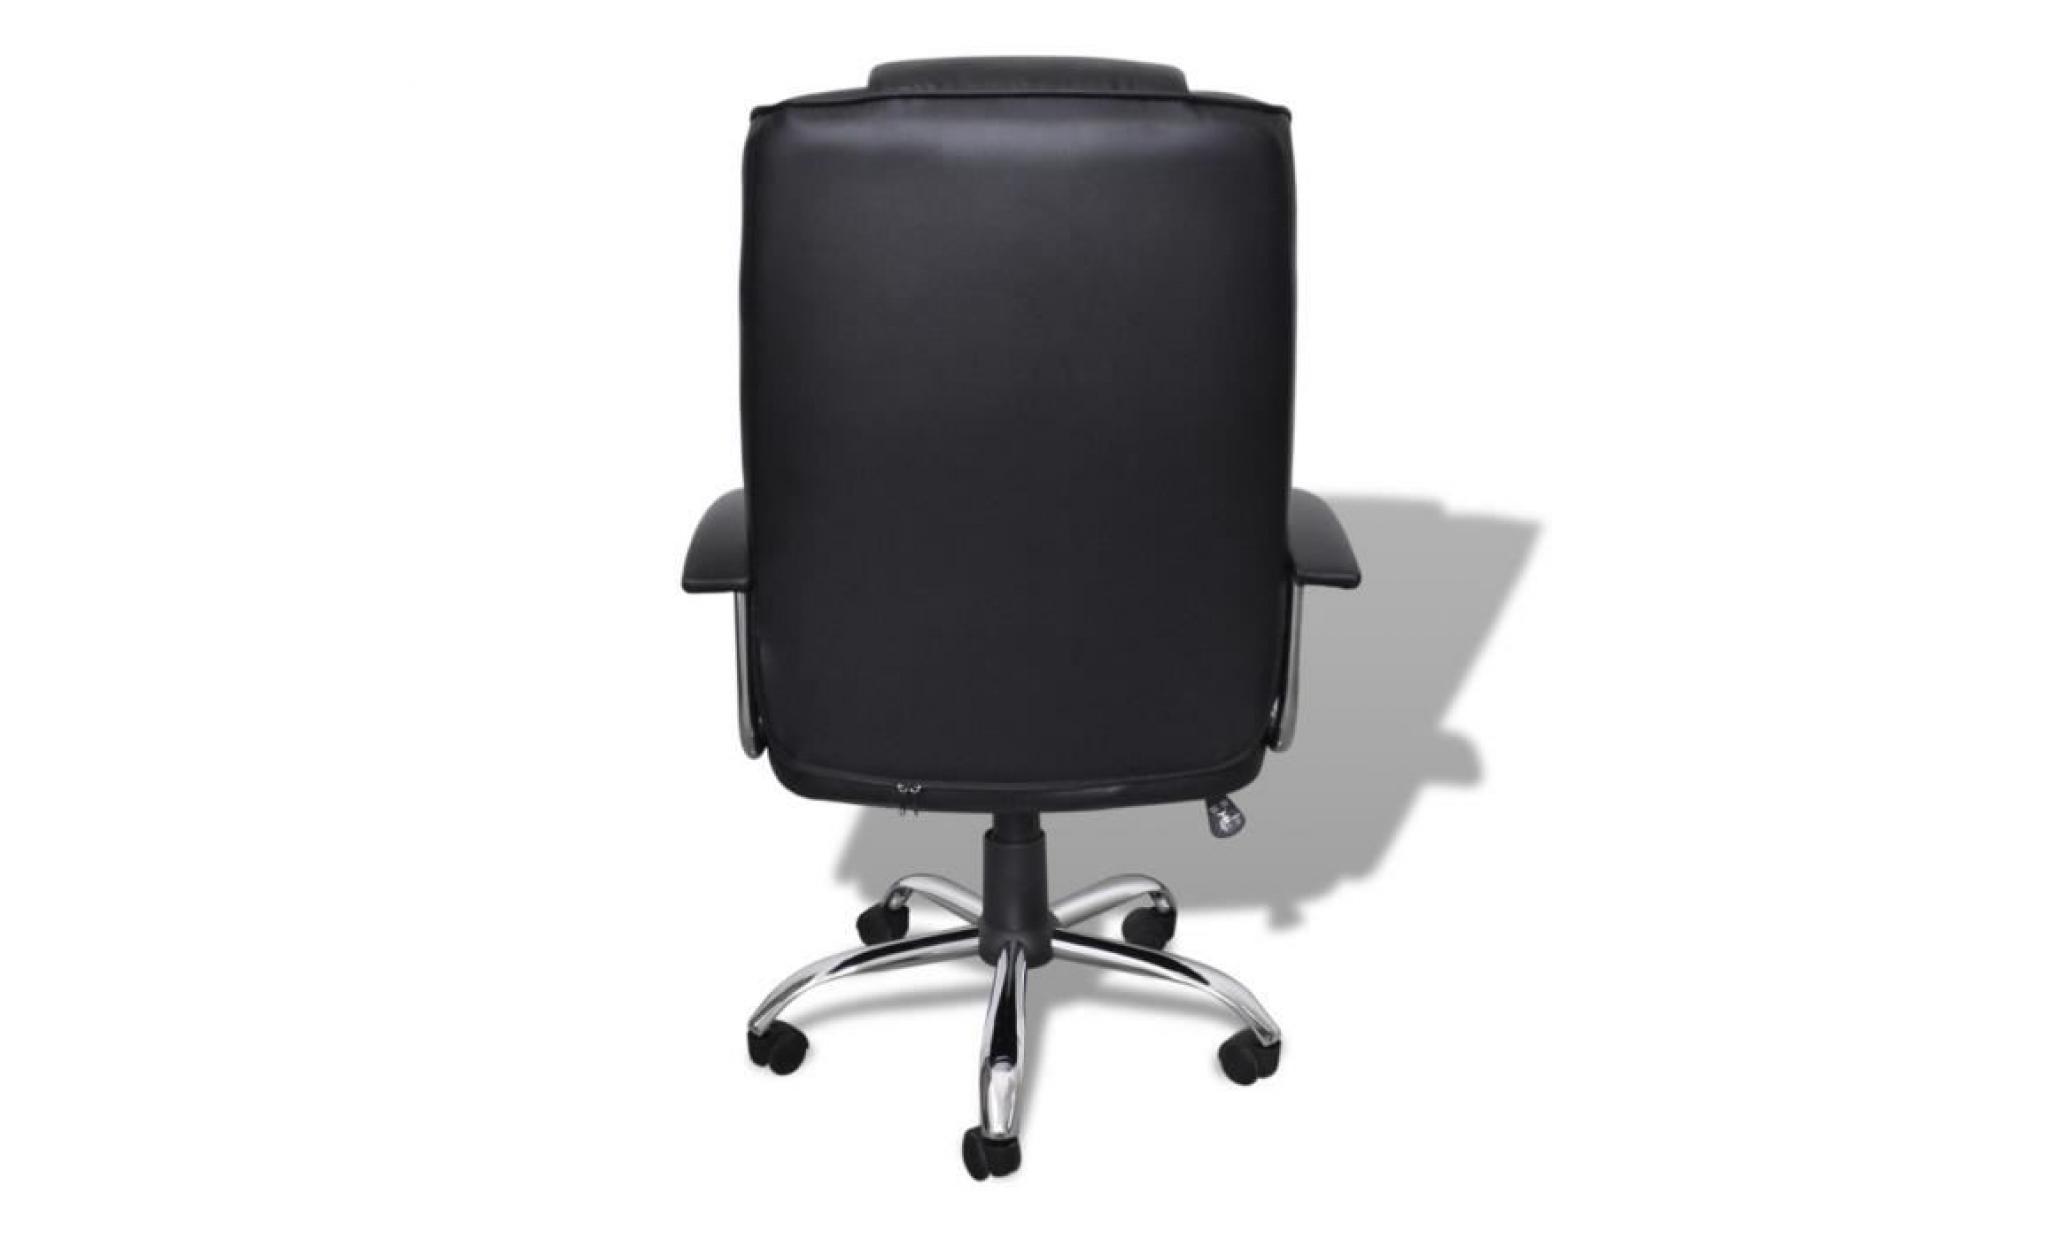 fauteuil de bureau ergonomique en similicuir   hauteur réglage   360 degrés pivotant   style d'affaire   chaise de bureau noir pas cher